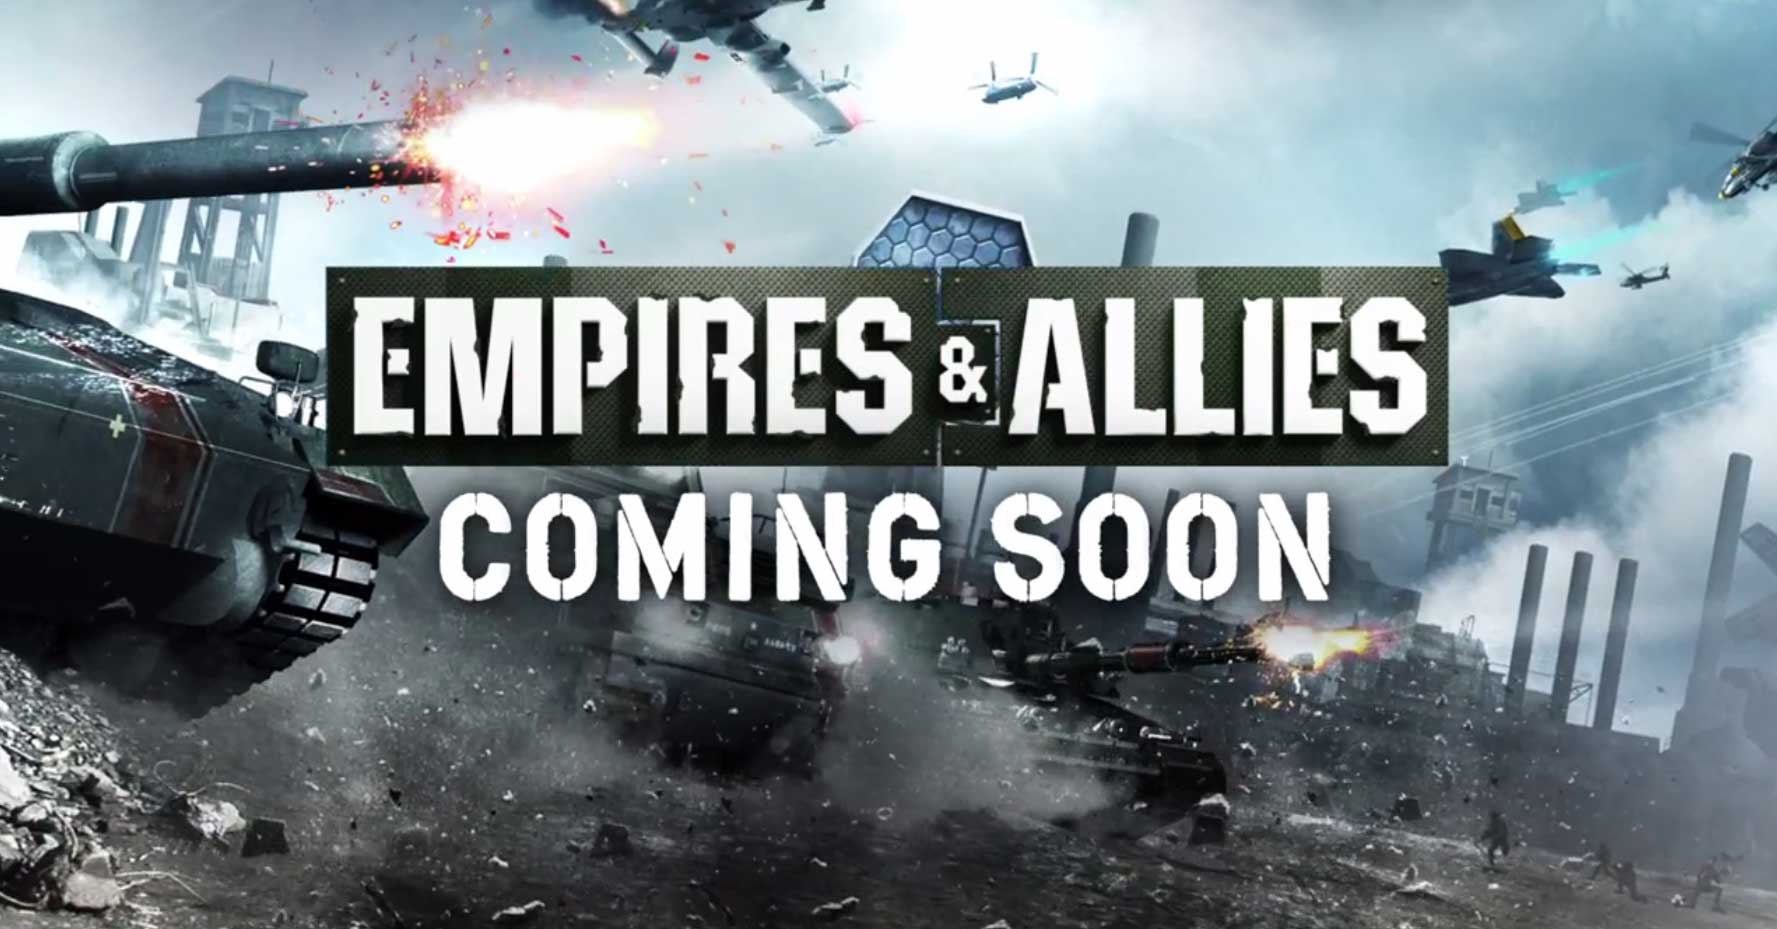 Im neuen Trailer könnt ihr einen Blick auf die kommende Spiele App Empires & Allies werfen - Bildquelle: Zynga // YouTube Video